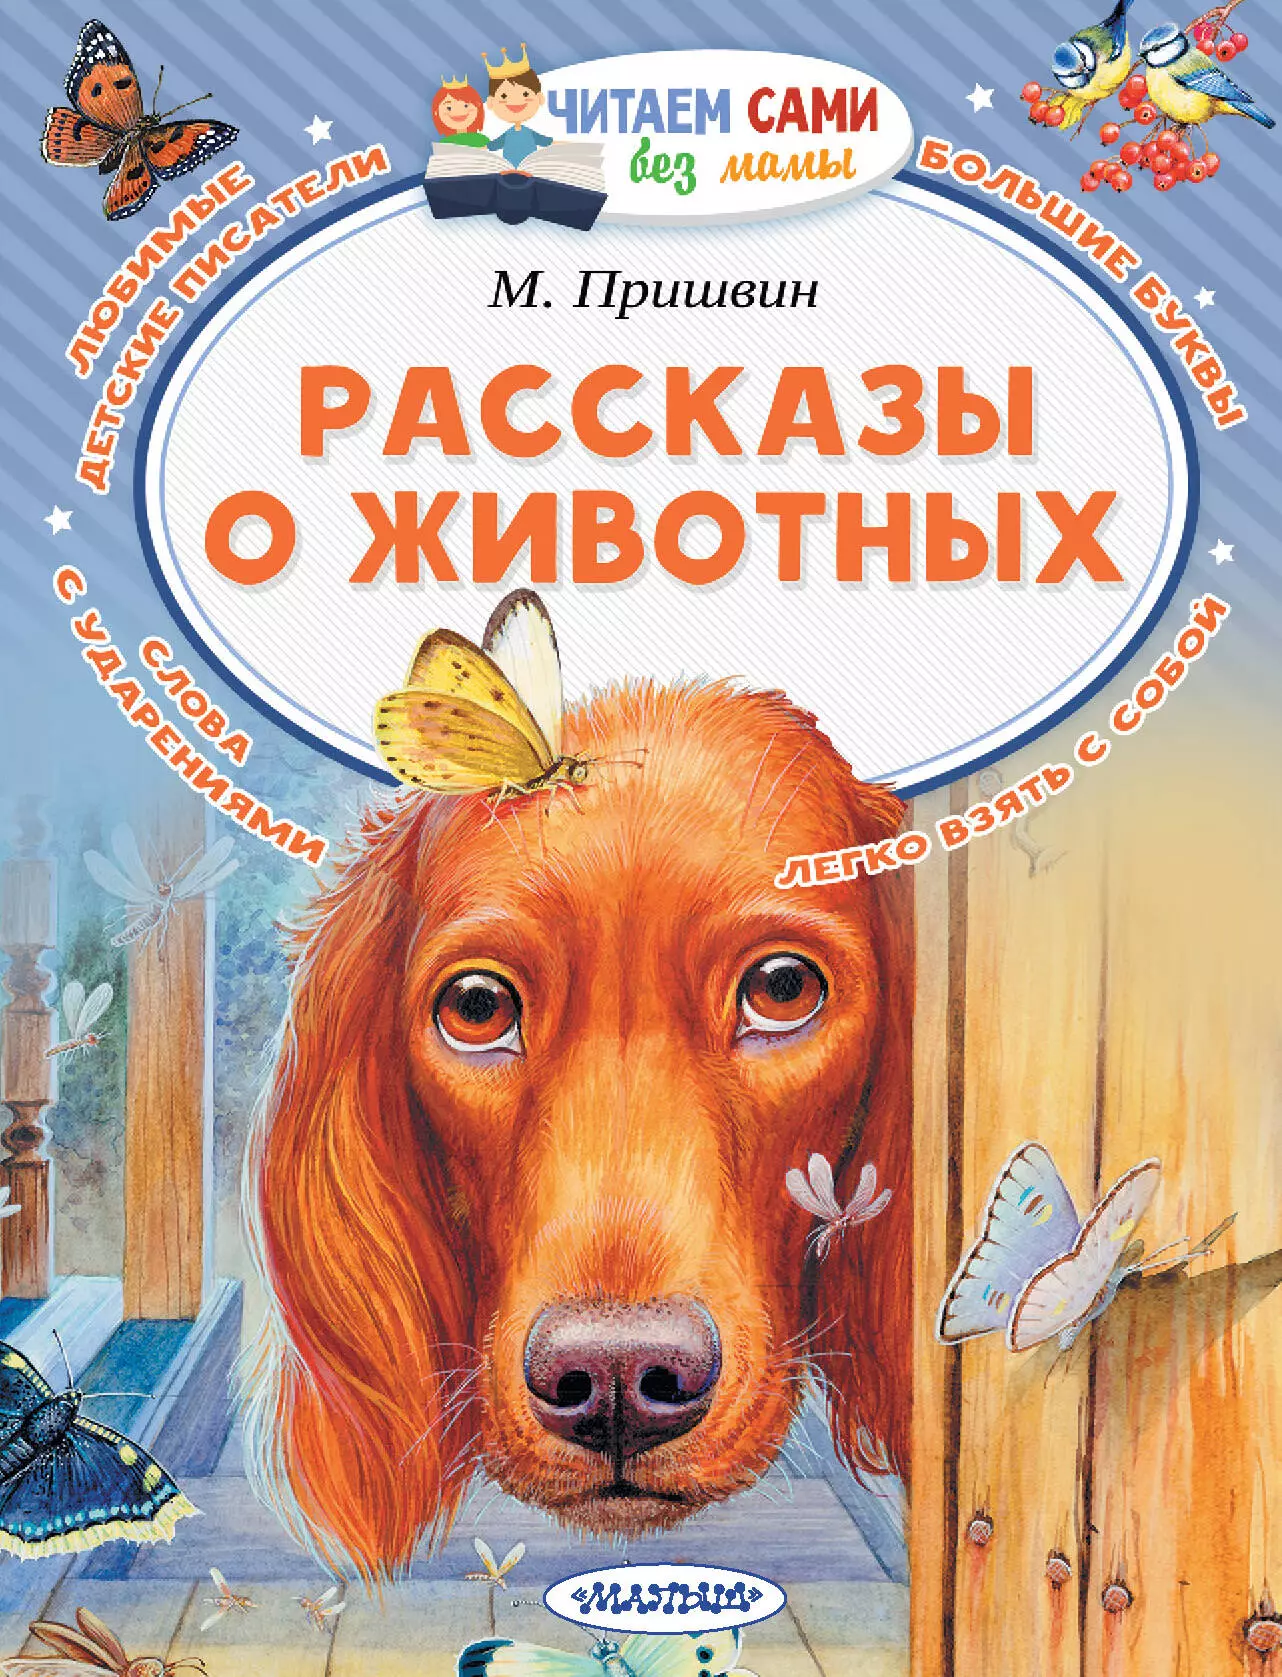 Пришвин Михаил Михайлович - Рассказы о животных